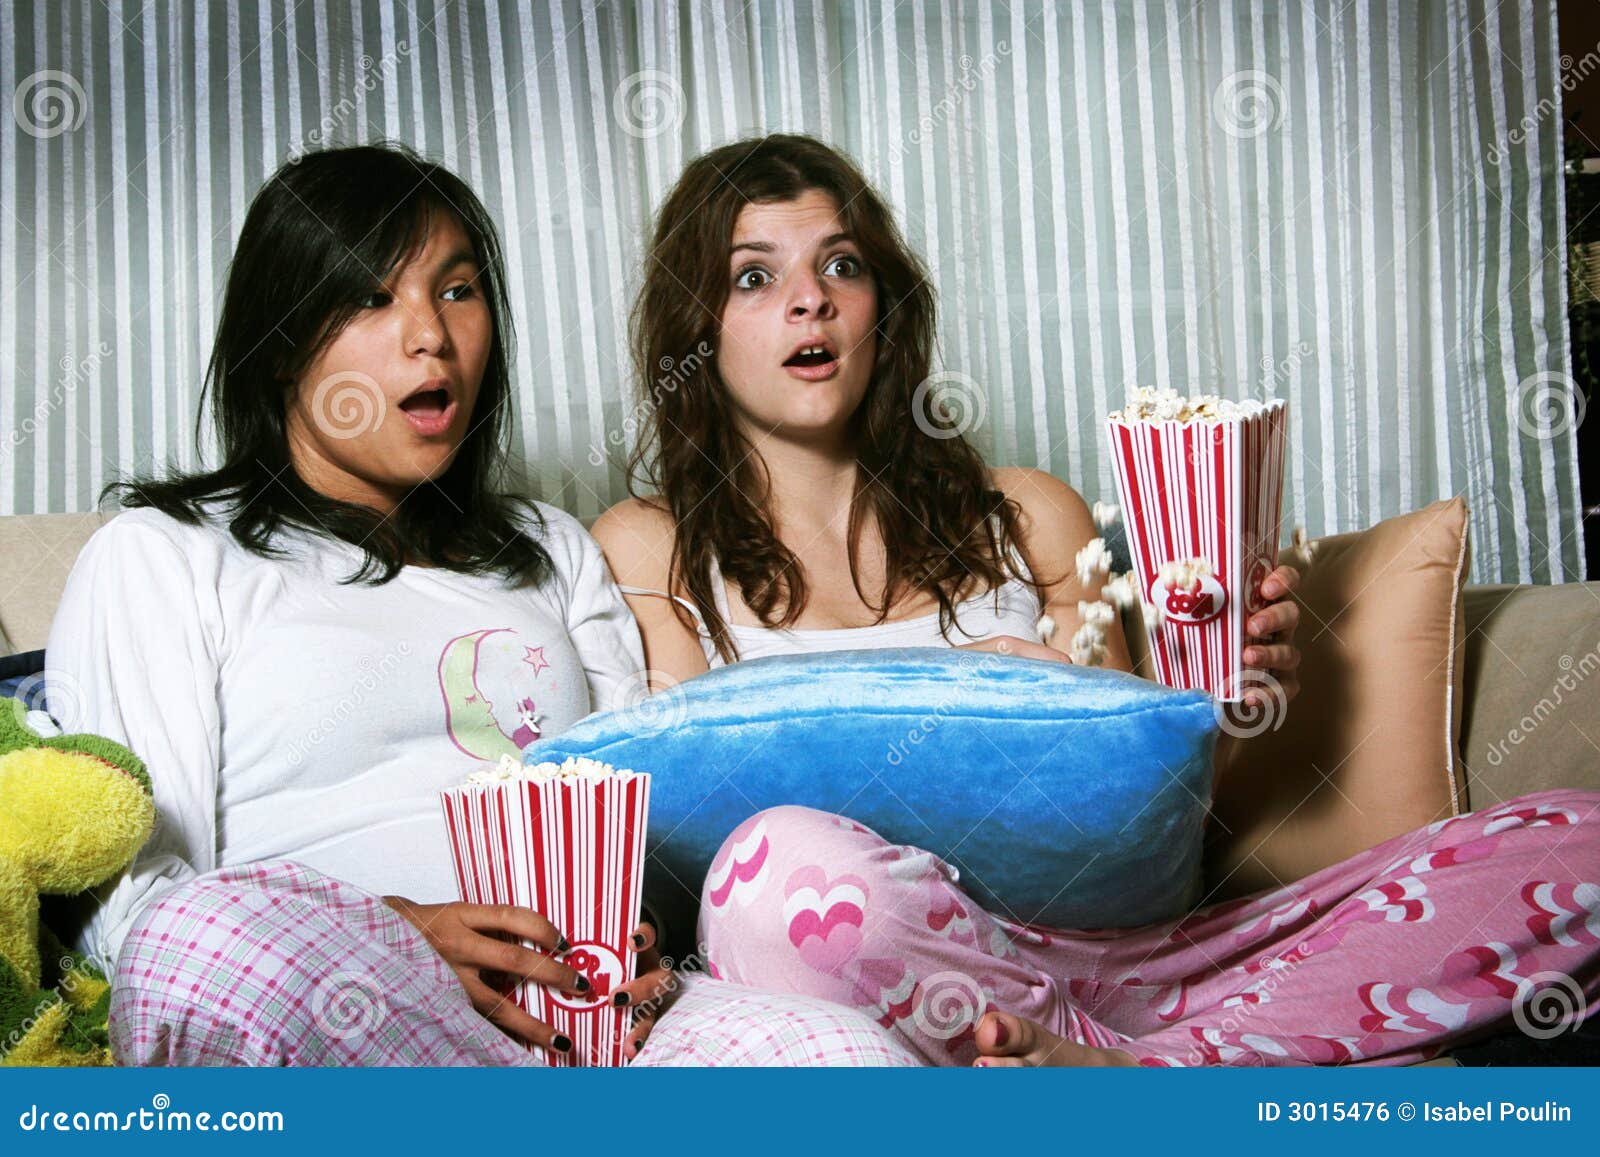 girls-watching-horror-movie-3015476.jpg